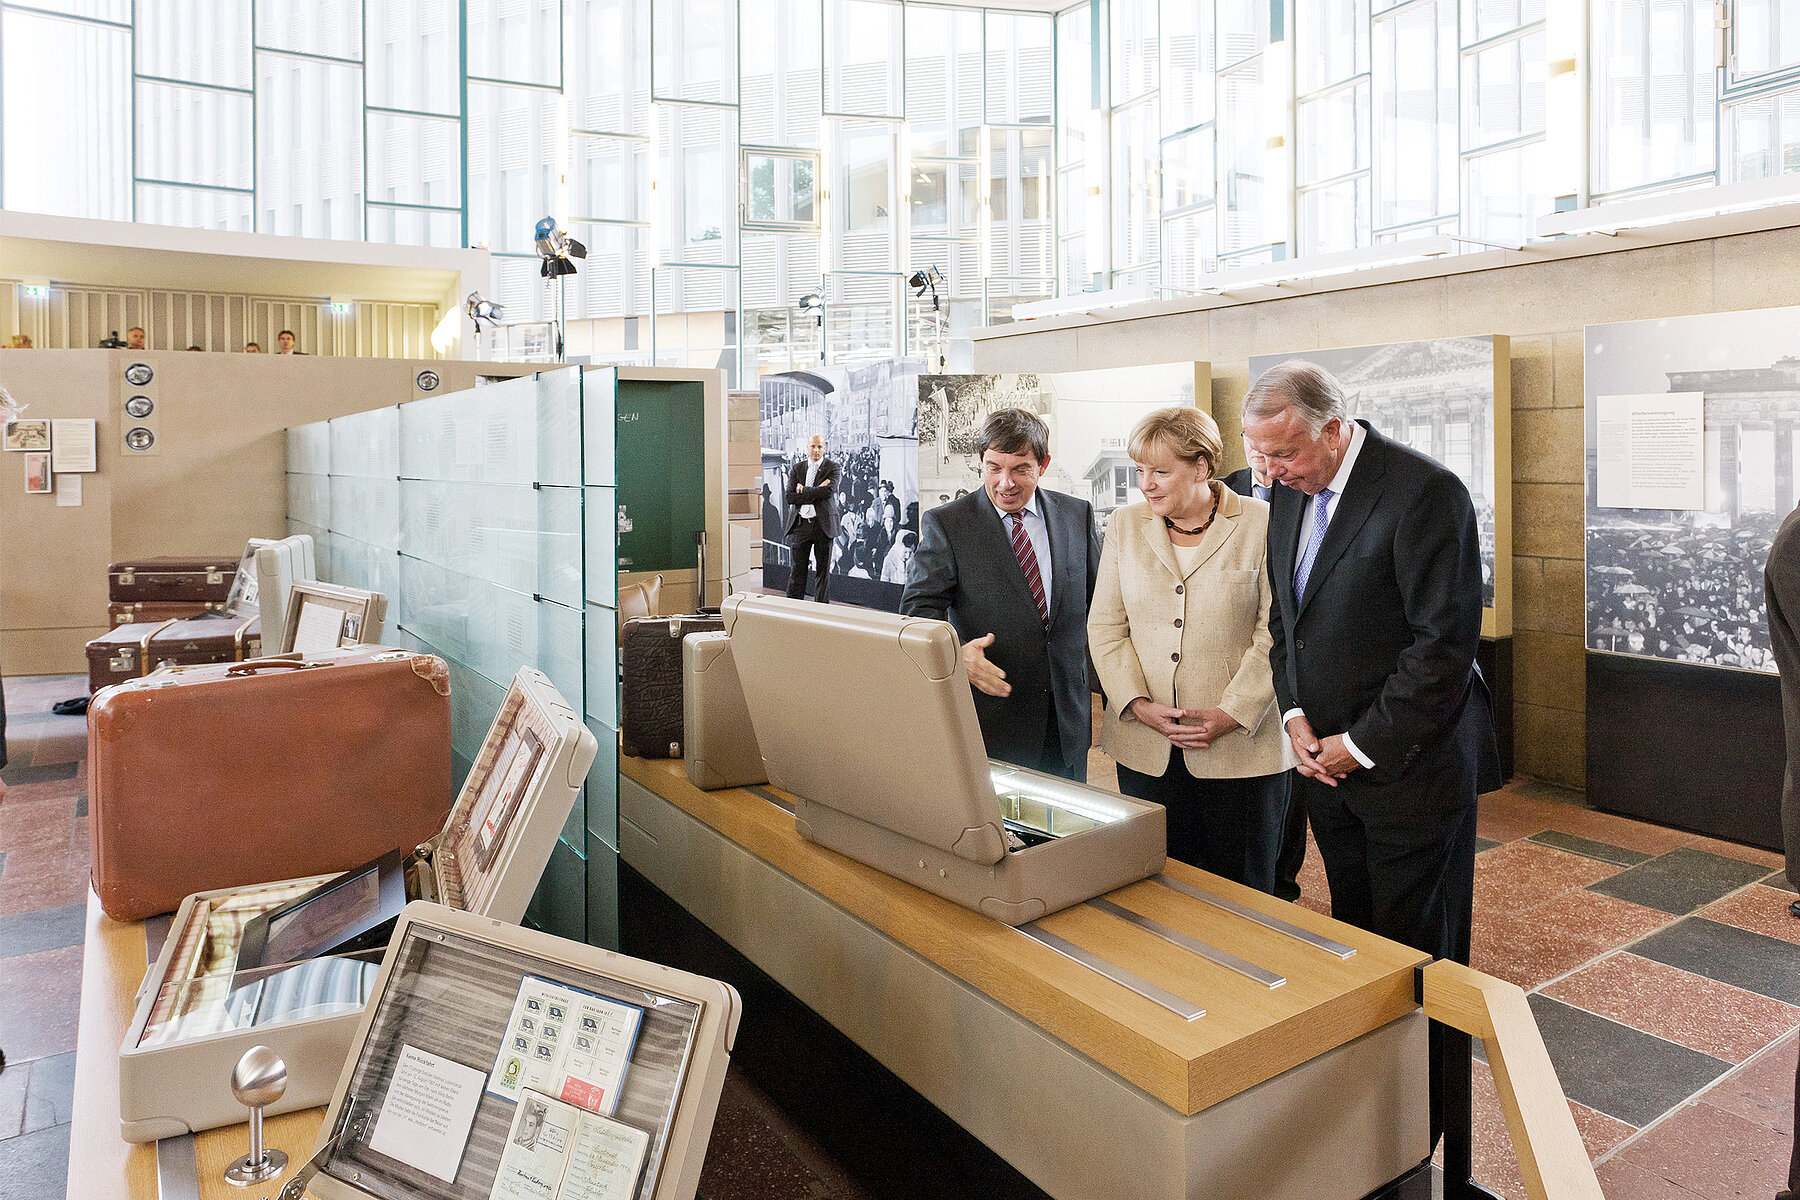 Koffer mit Museumsobjekten auf Erhöhungen in der Ausstellung. Rechts Hans Walter Hütter, Angela Merkel und Bernd Neumann. 